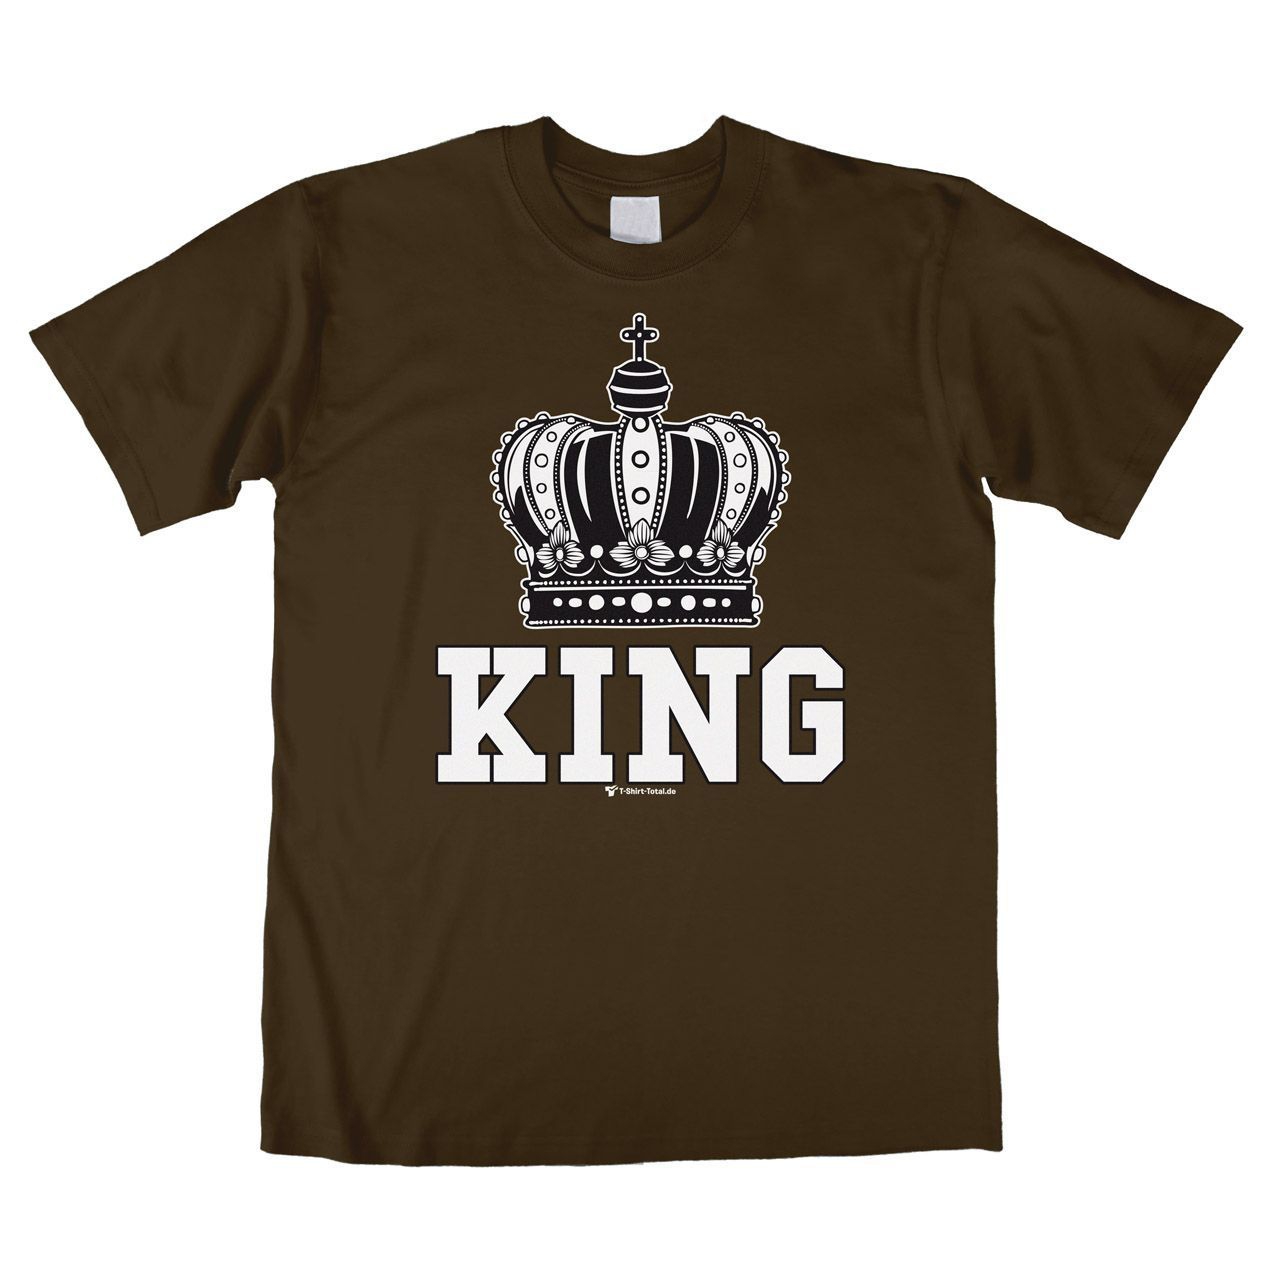 King Unisex T-Shirt braun Large